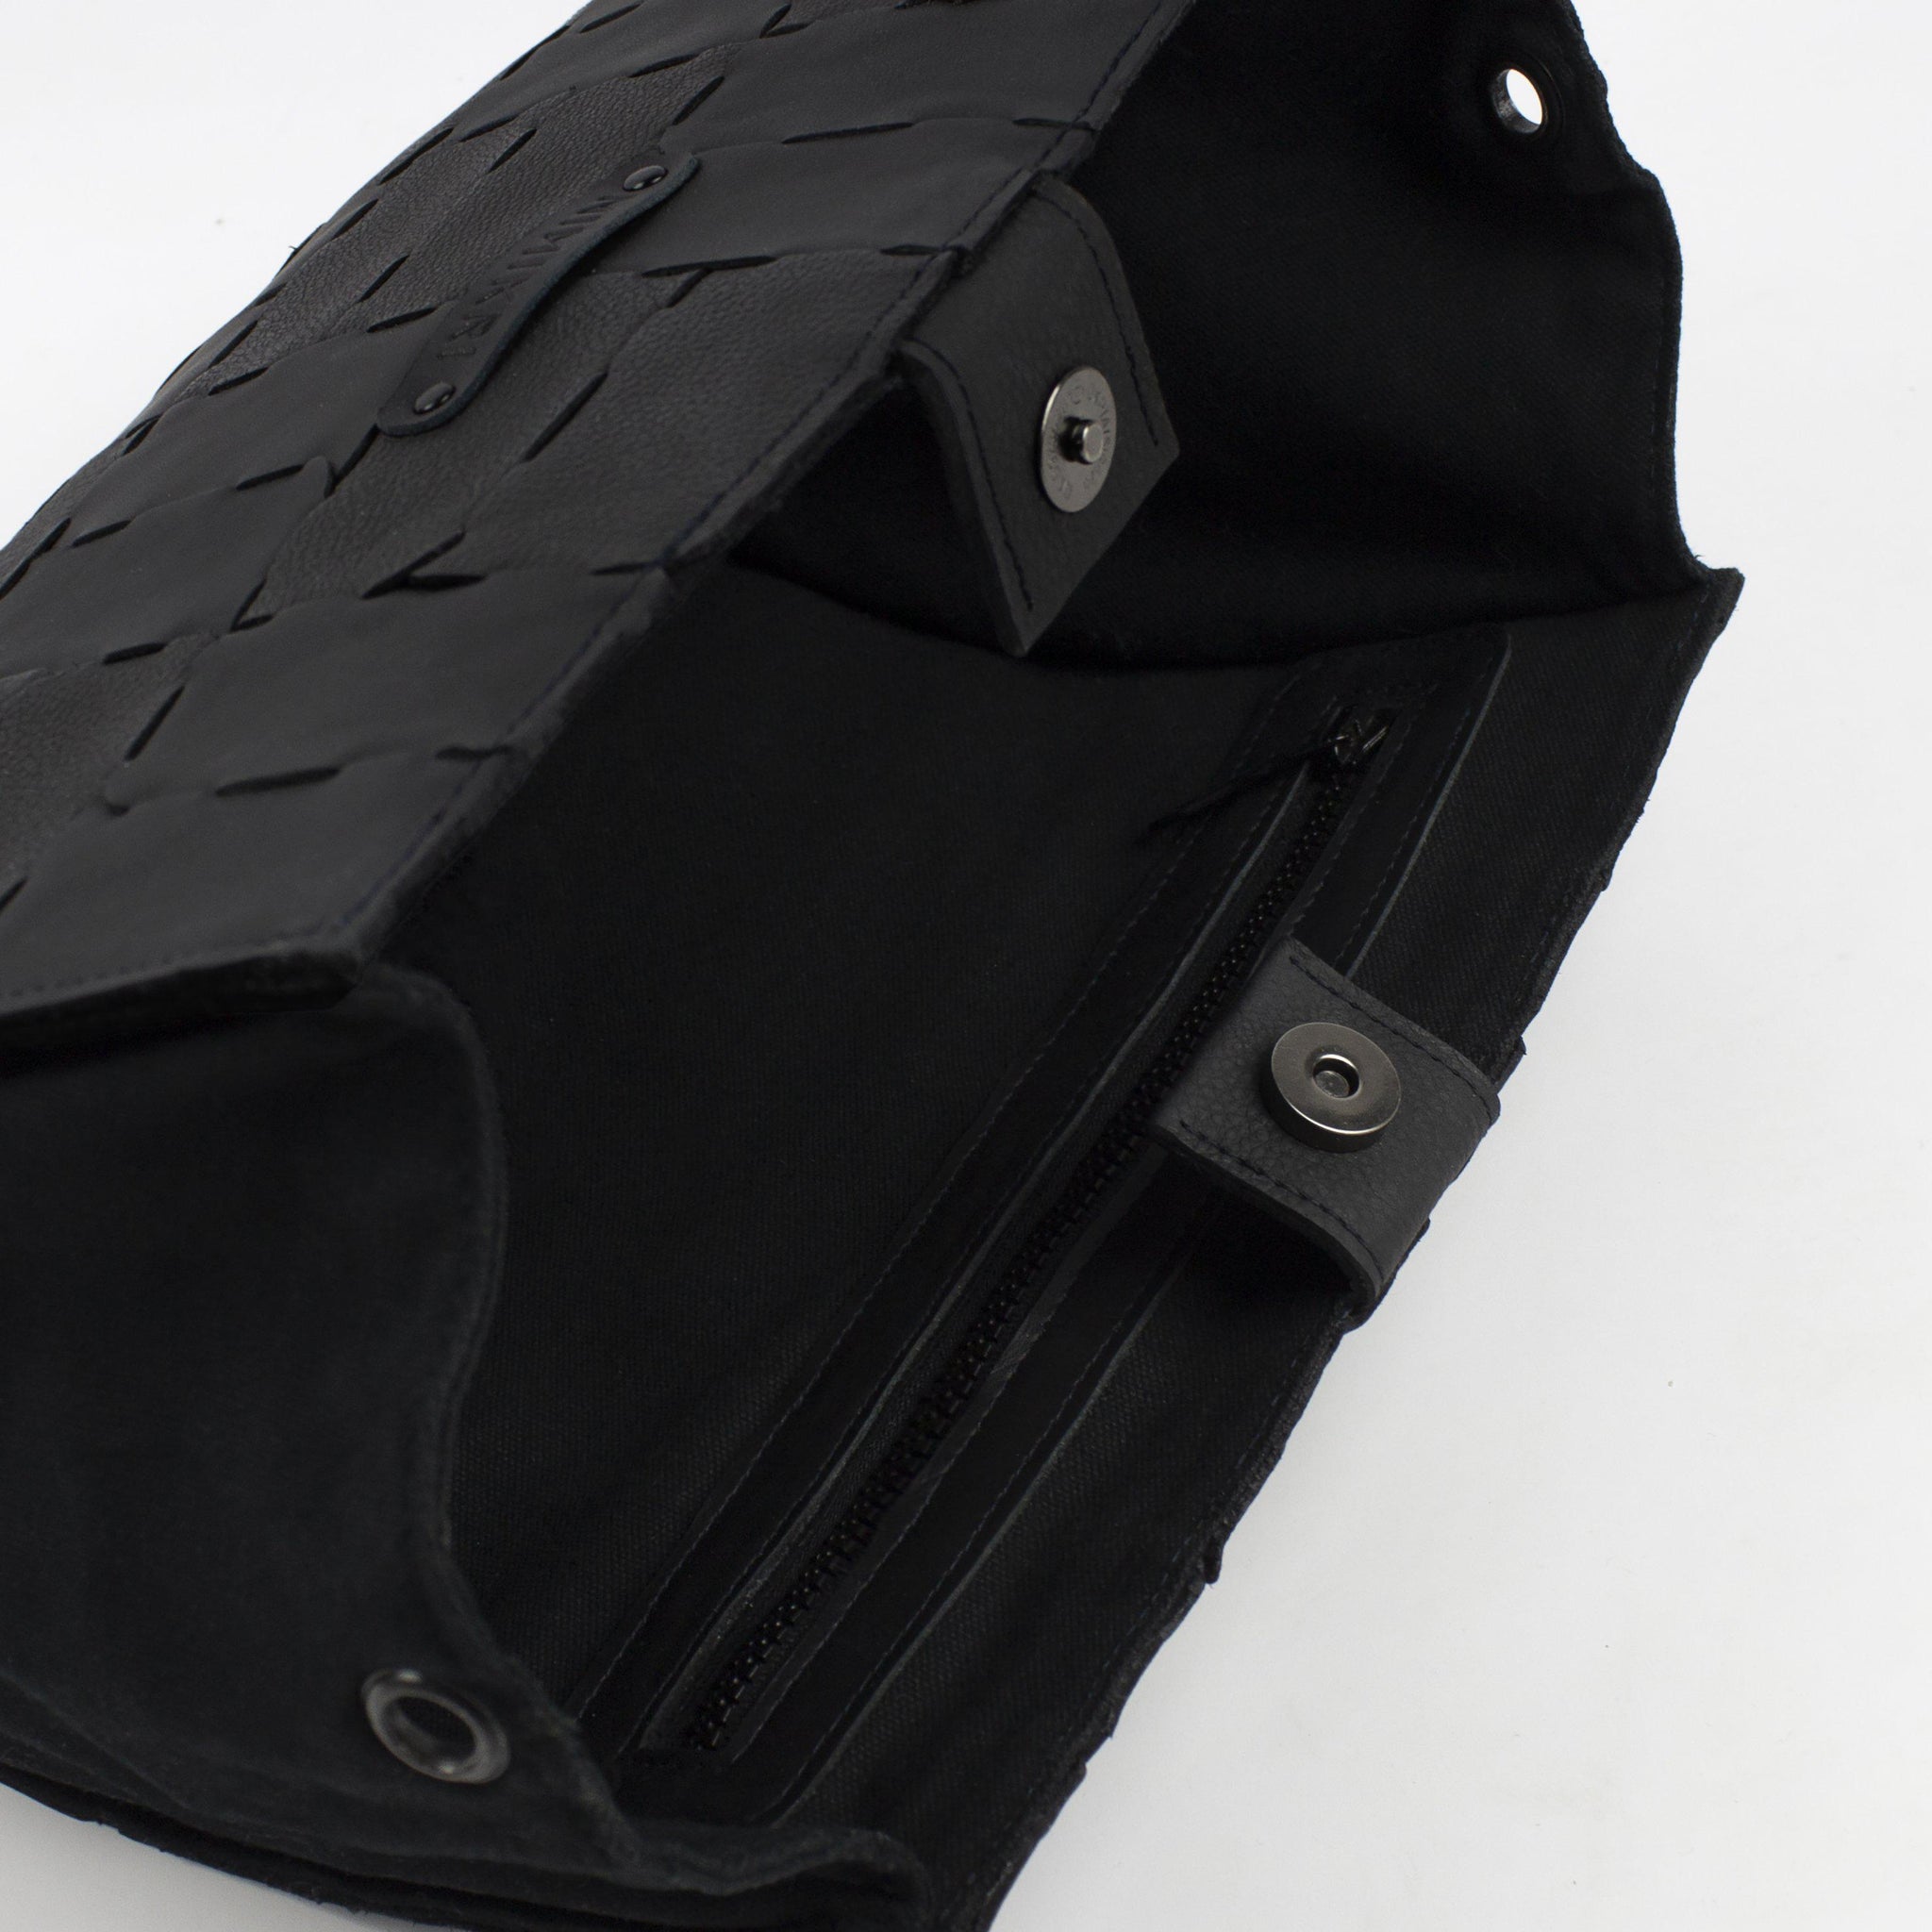 Designer clutch bag / genuine leather purse / recycled handbag-designer, designer bag, evening bag, geometric, handbag, leather bag, modular, modular clutch, small shoulder bag-Mimikri